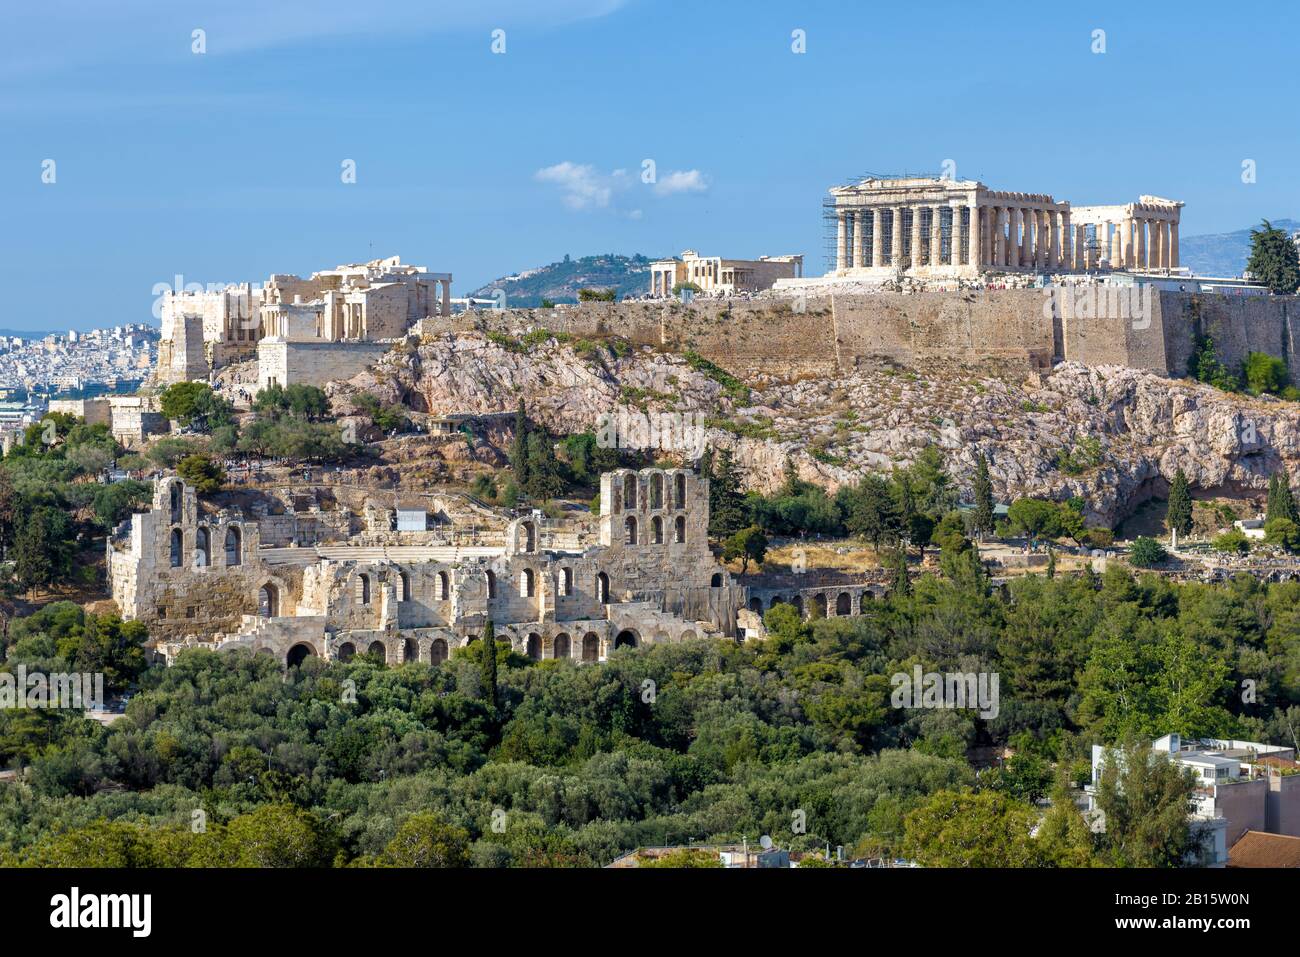 Blick auf die Akropolis von Athen, Griechenland. Der altgriechische Parthenon auf dem Akropolishügel ist das wichtigste Wahrzeichen Athens. Panorama des berühmten R. Stockfoto